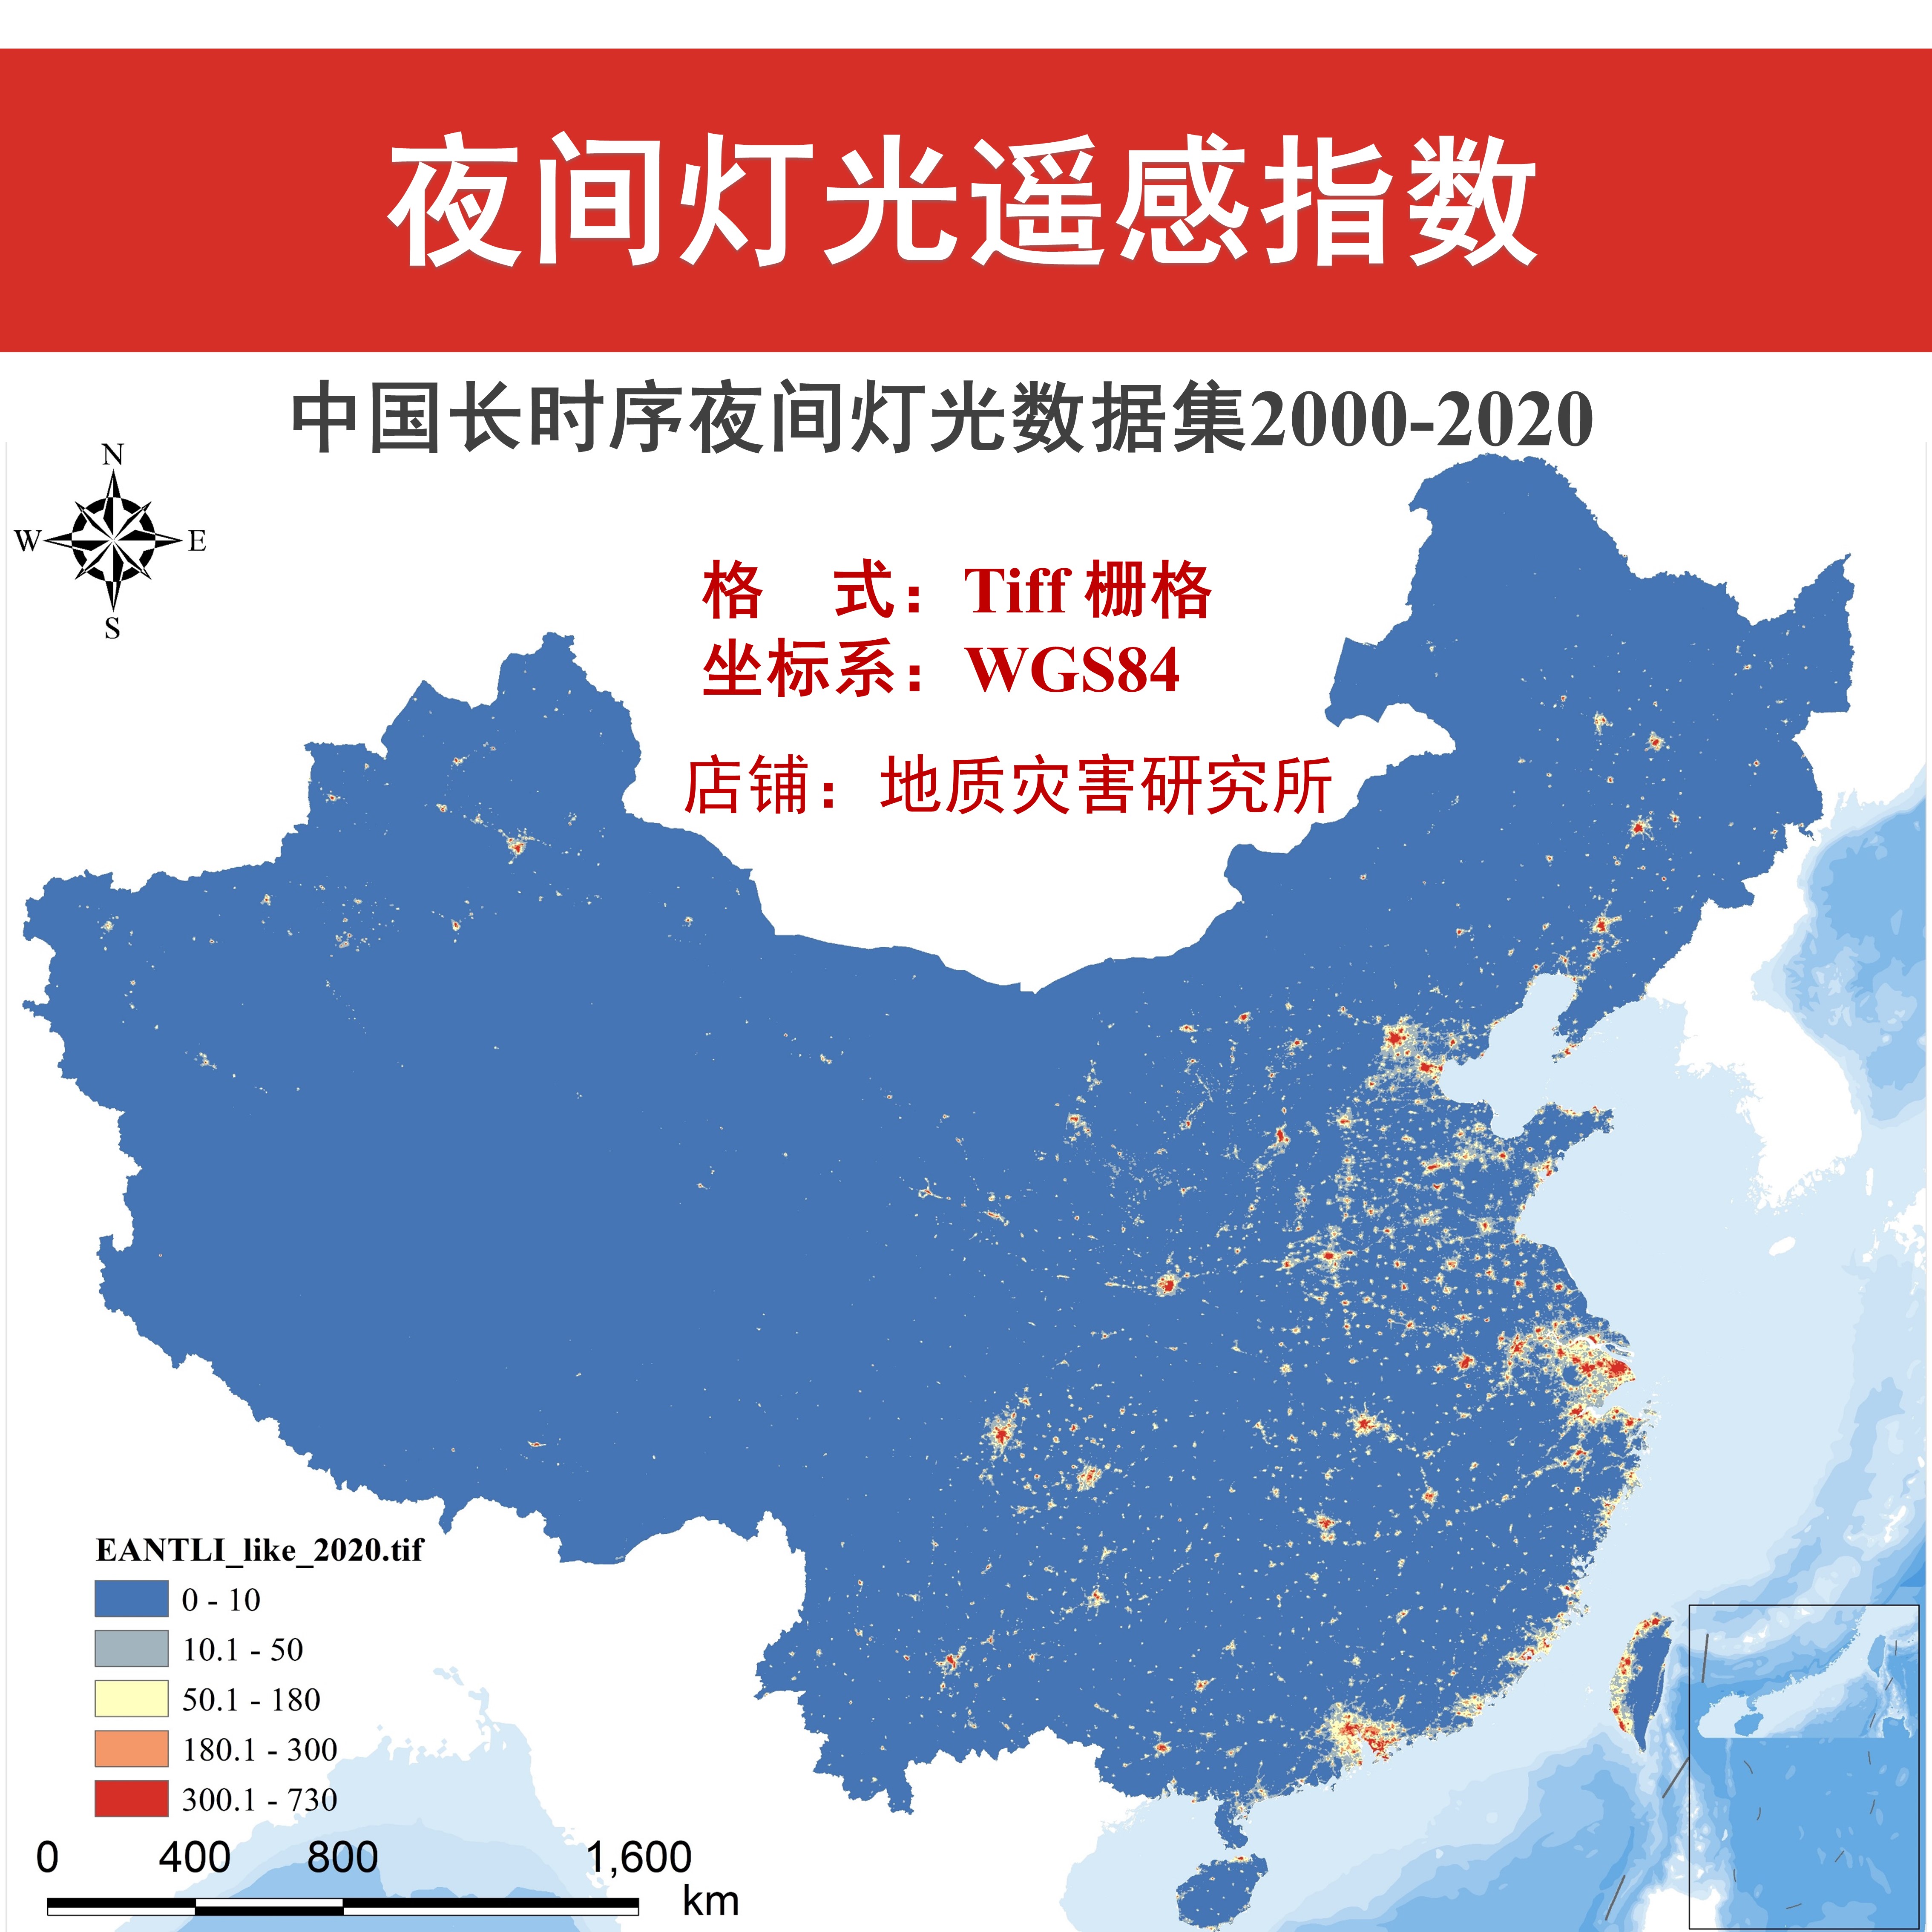 中国夜间灯光遥感数据集年度月度灯光亮度tif栅格数据GIS出图经济